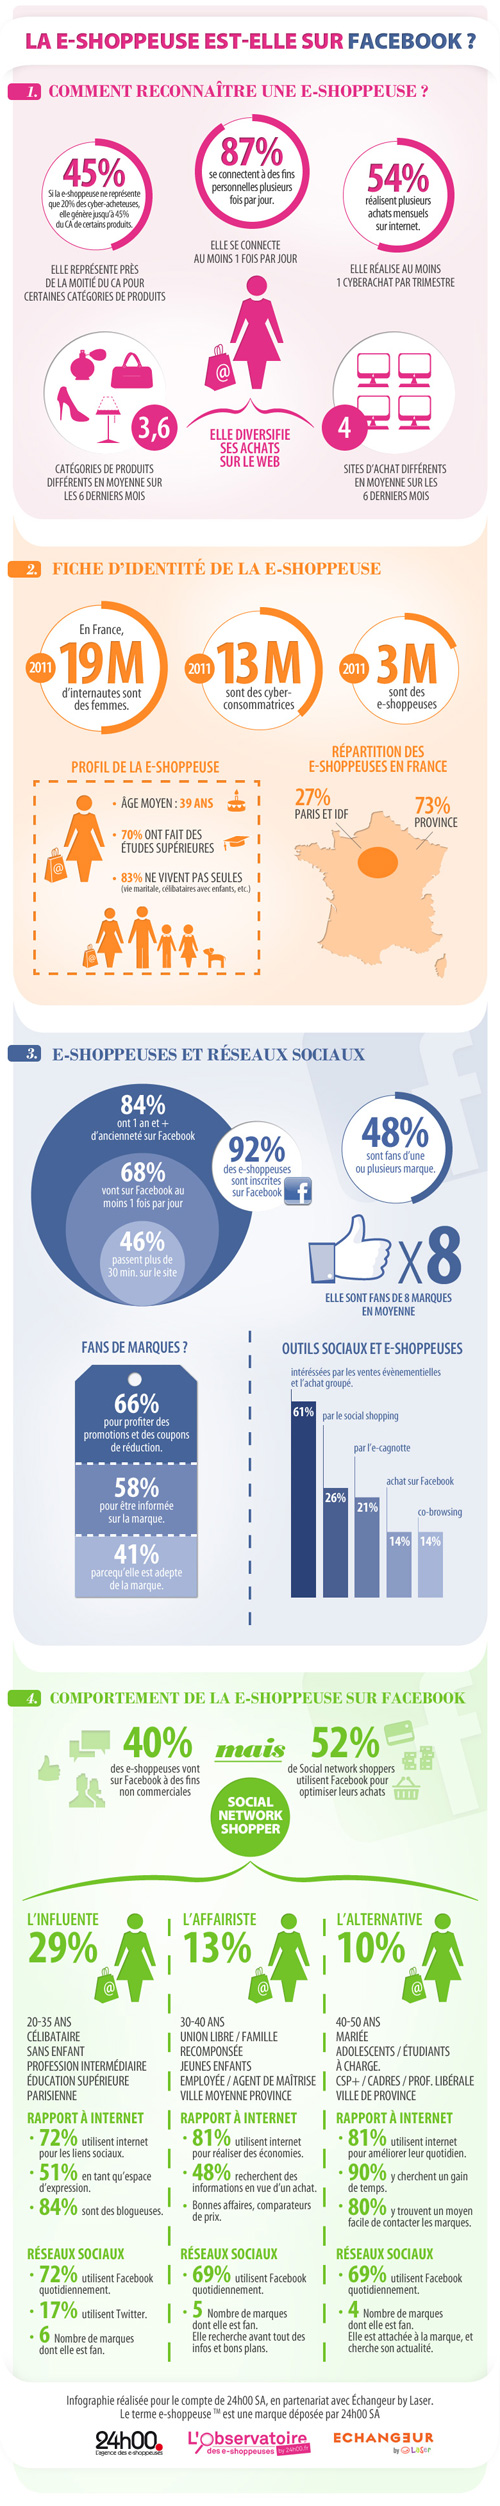 Social commerce : E-shoppeuse Facebook